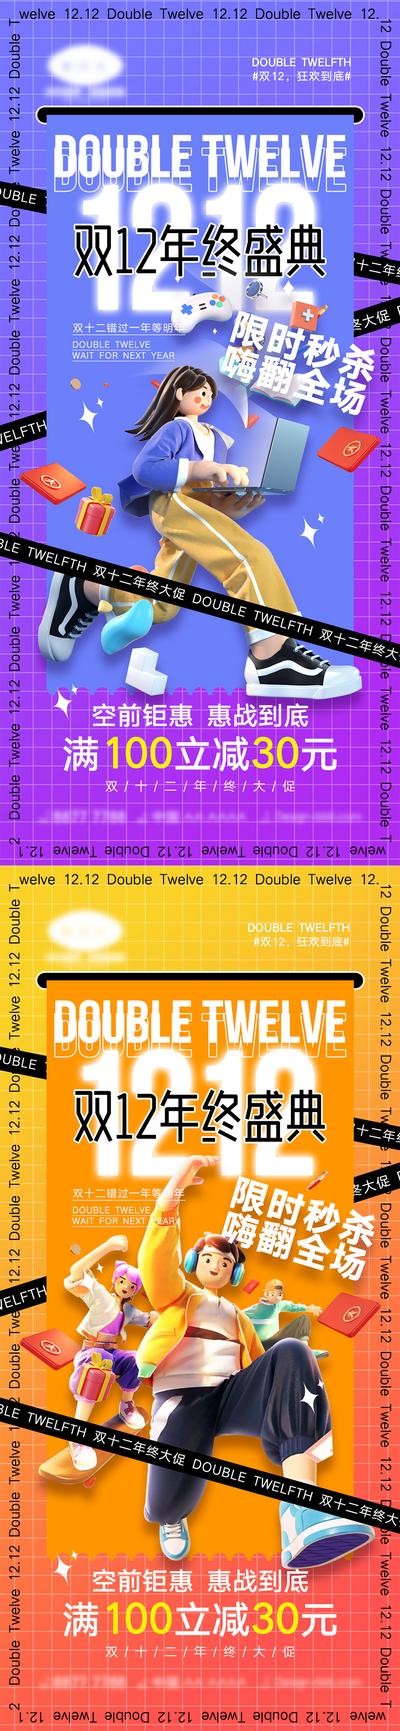 【南门网】海报 活动 促销 双十一 狂欢 购物 优惠 双十一 双12 双十二 12.12